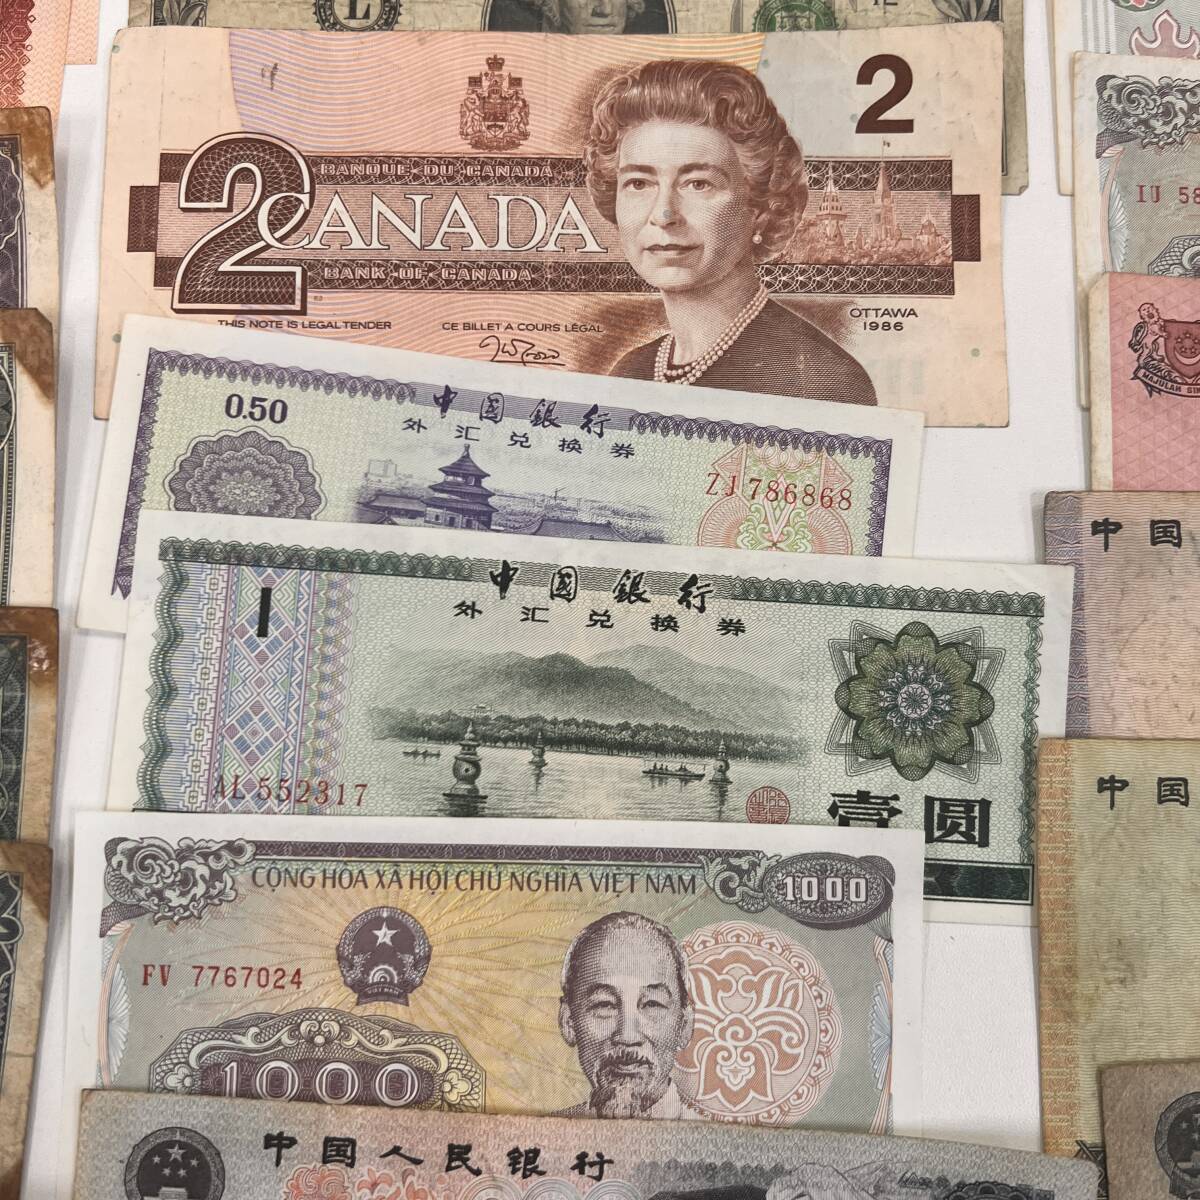 5-321[ зарубежный банкноты много суммировать рис доллар China изначальный ]6 доллар 2 Canada доллар обе изменение античный путешествие за границу иен дешево за границей sen collector товар 1 иен лот 1 иен старт 